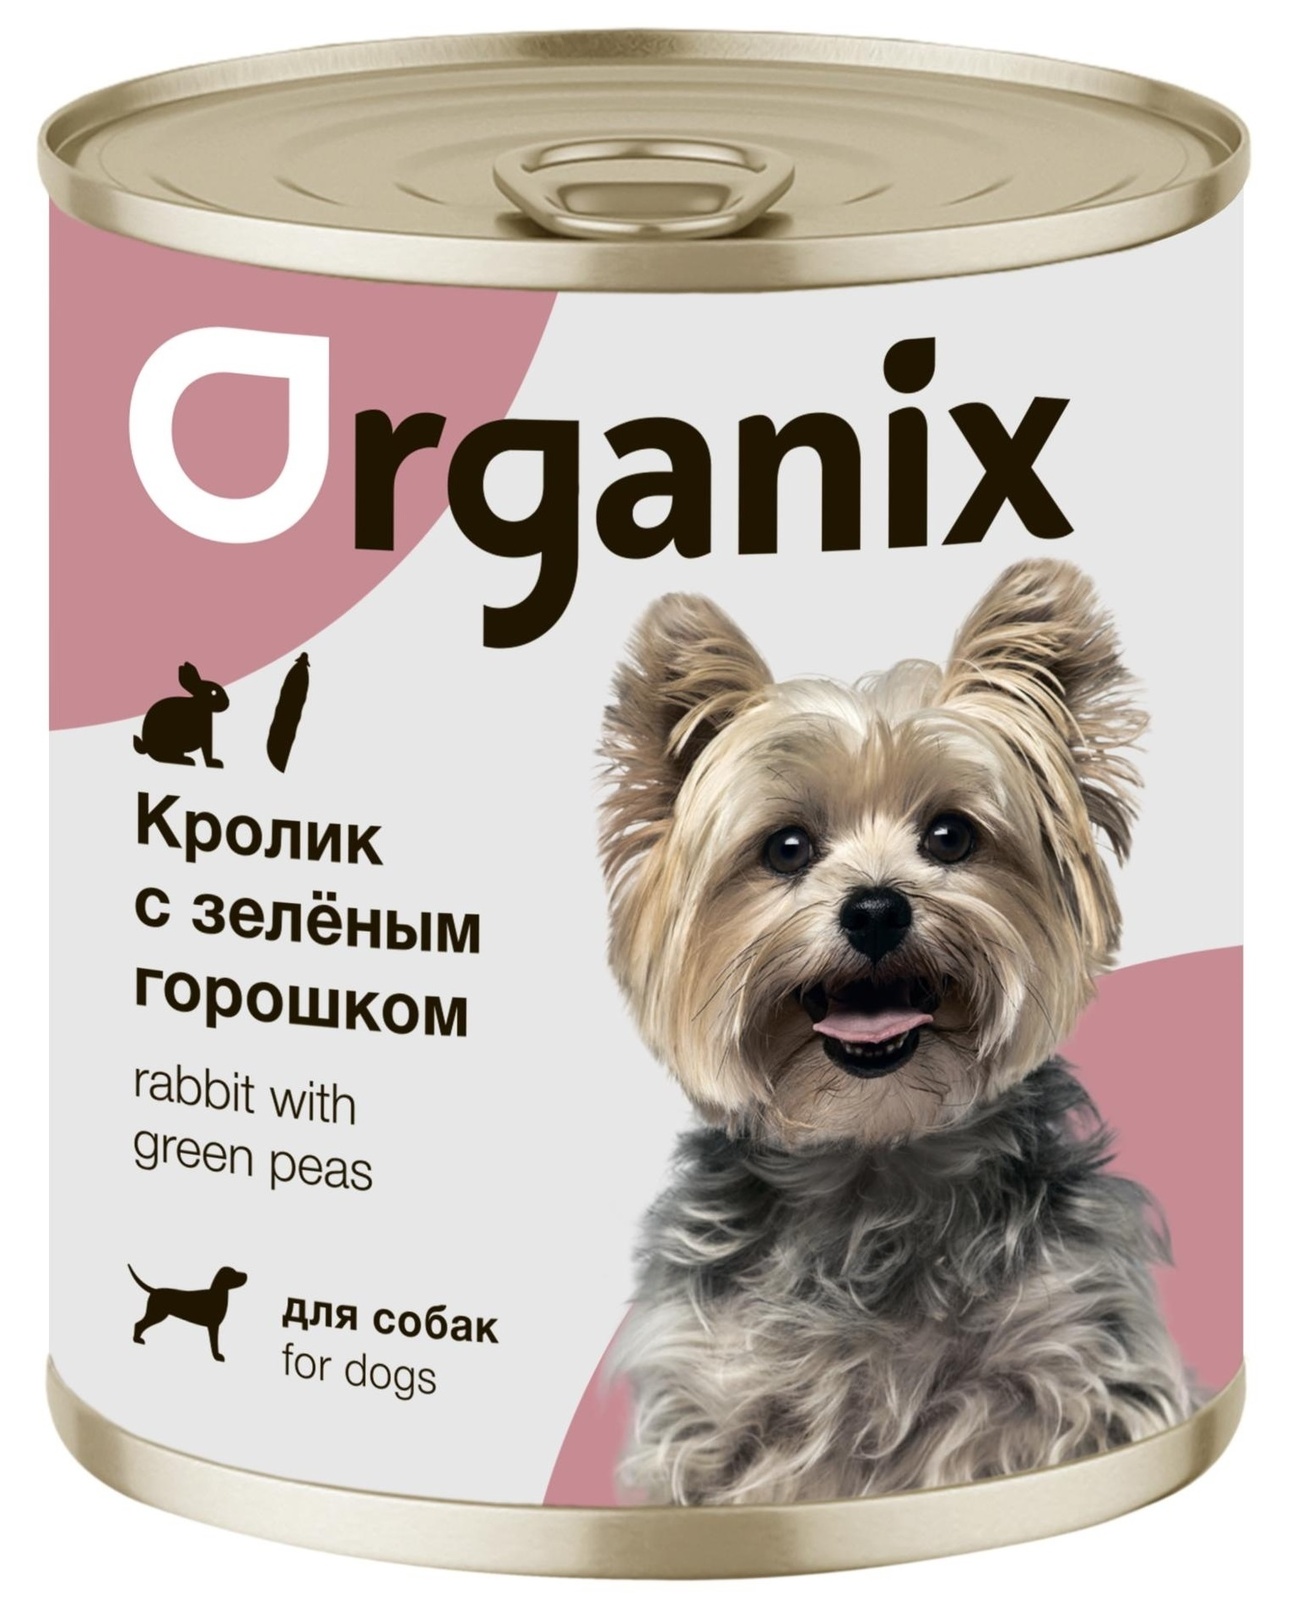 Organix консервы Organix консервы для собак Кролик с зеленым горошком (750 г) organix консервы organix консервы для собак ягненок с рубцом и морковью 750 г